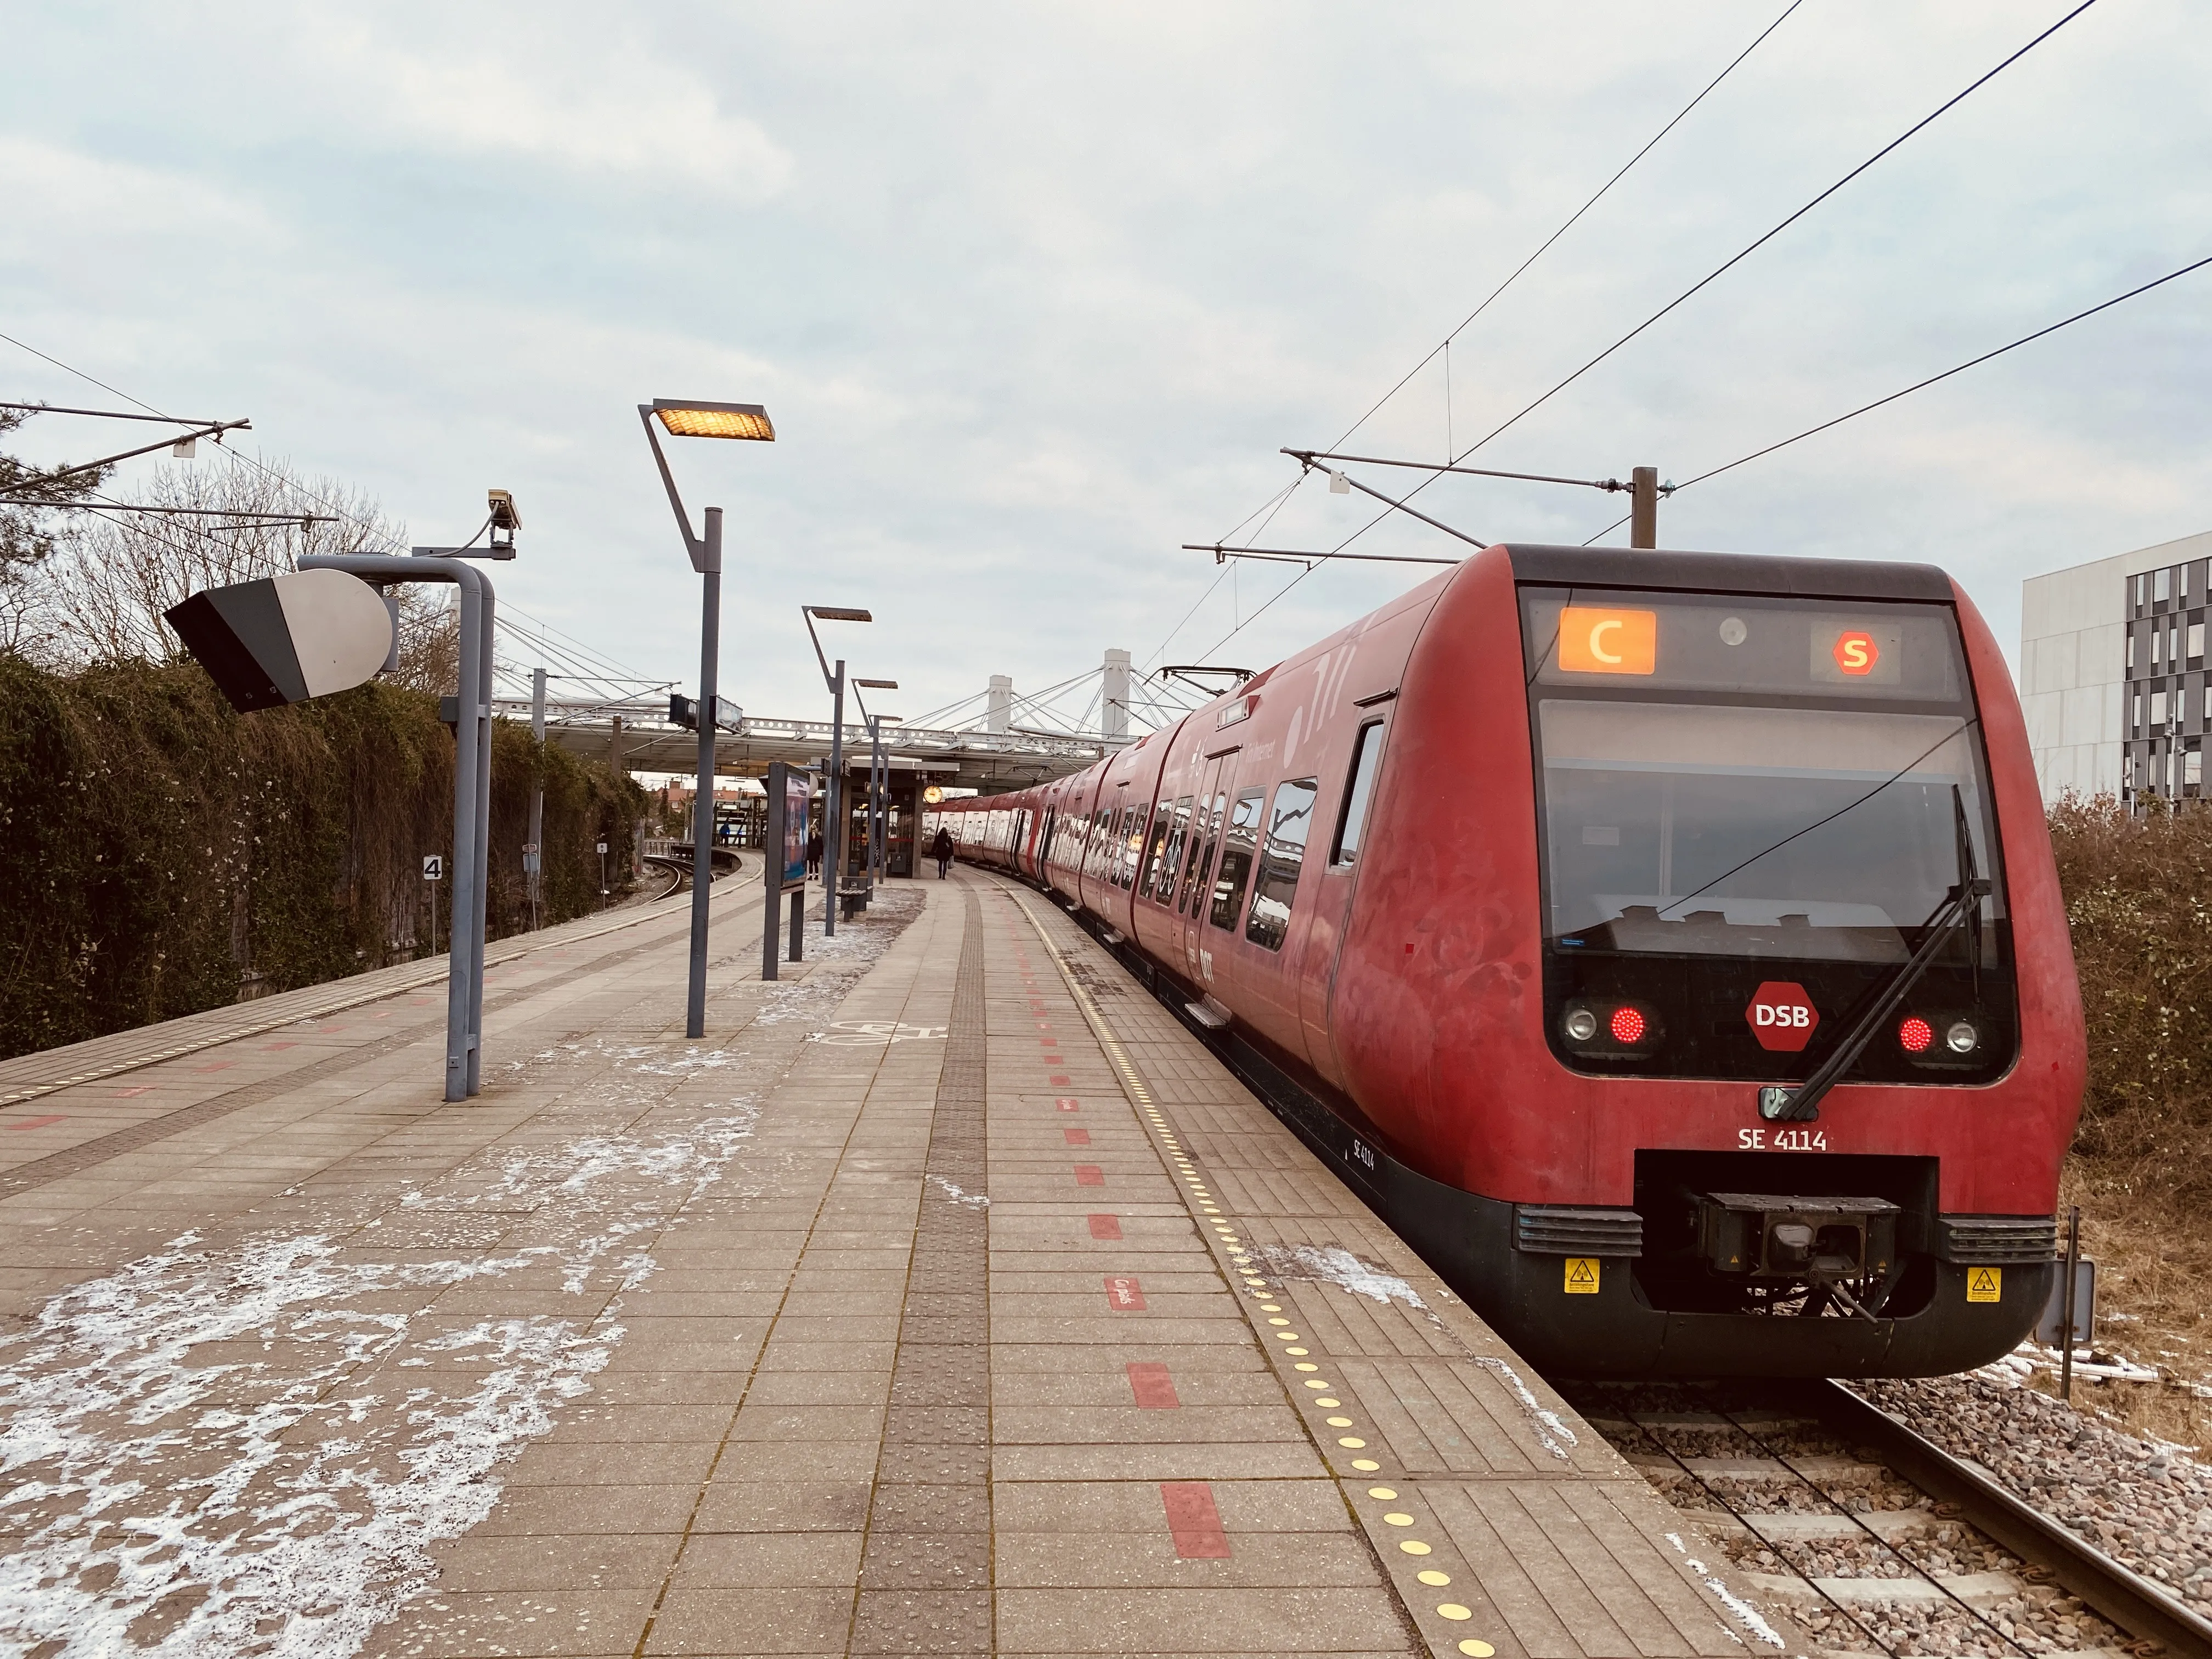 Billede af DSB SE 4114 fotograferet ud for Flintholm Station.